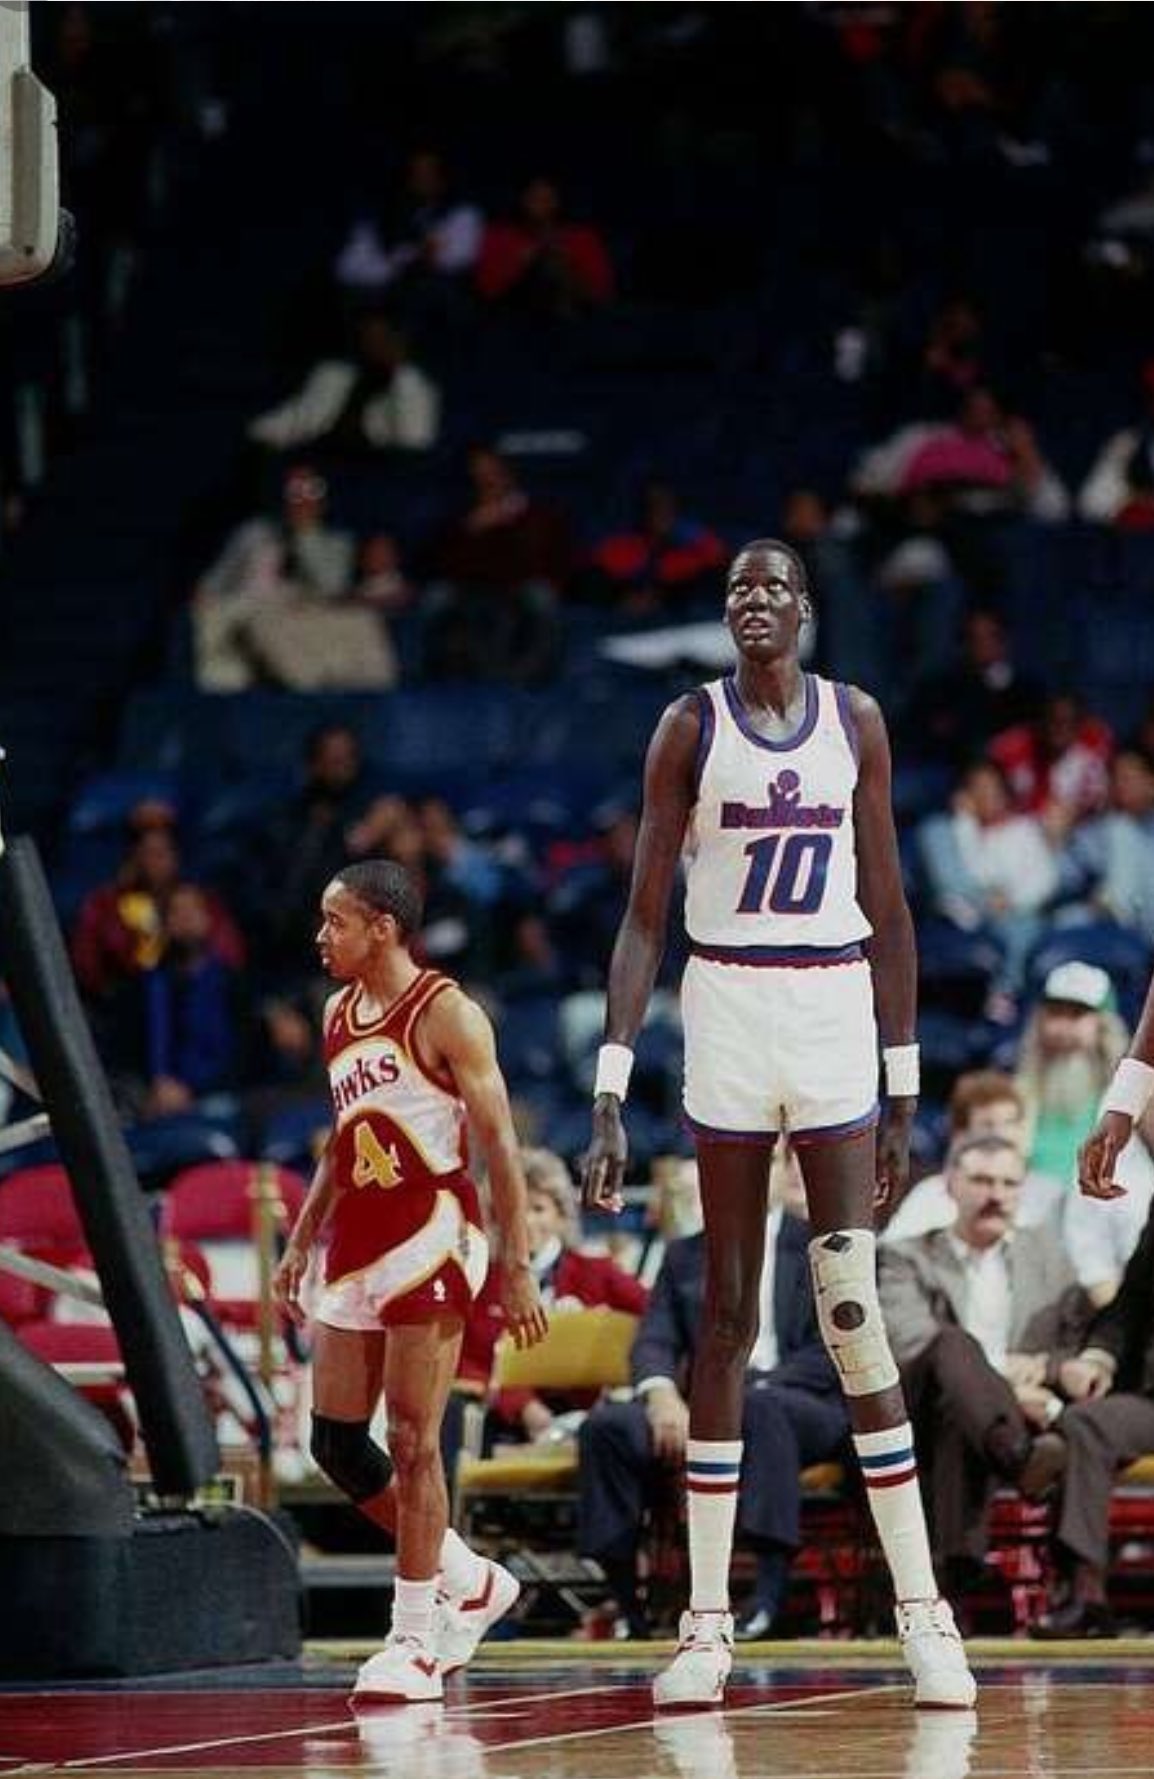 Today in sports history: 5-foot-7 Spud Webb soars in 1986 NBA slam